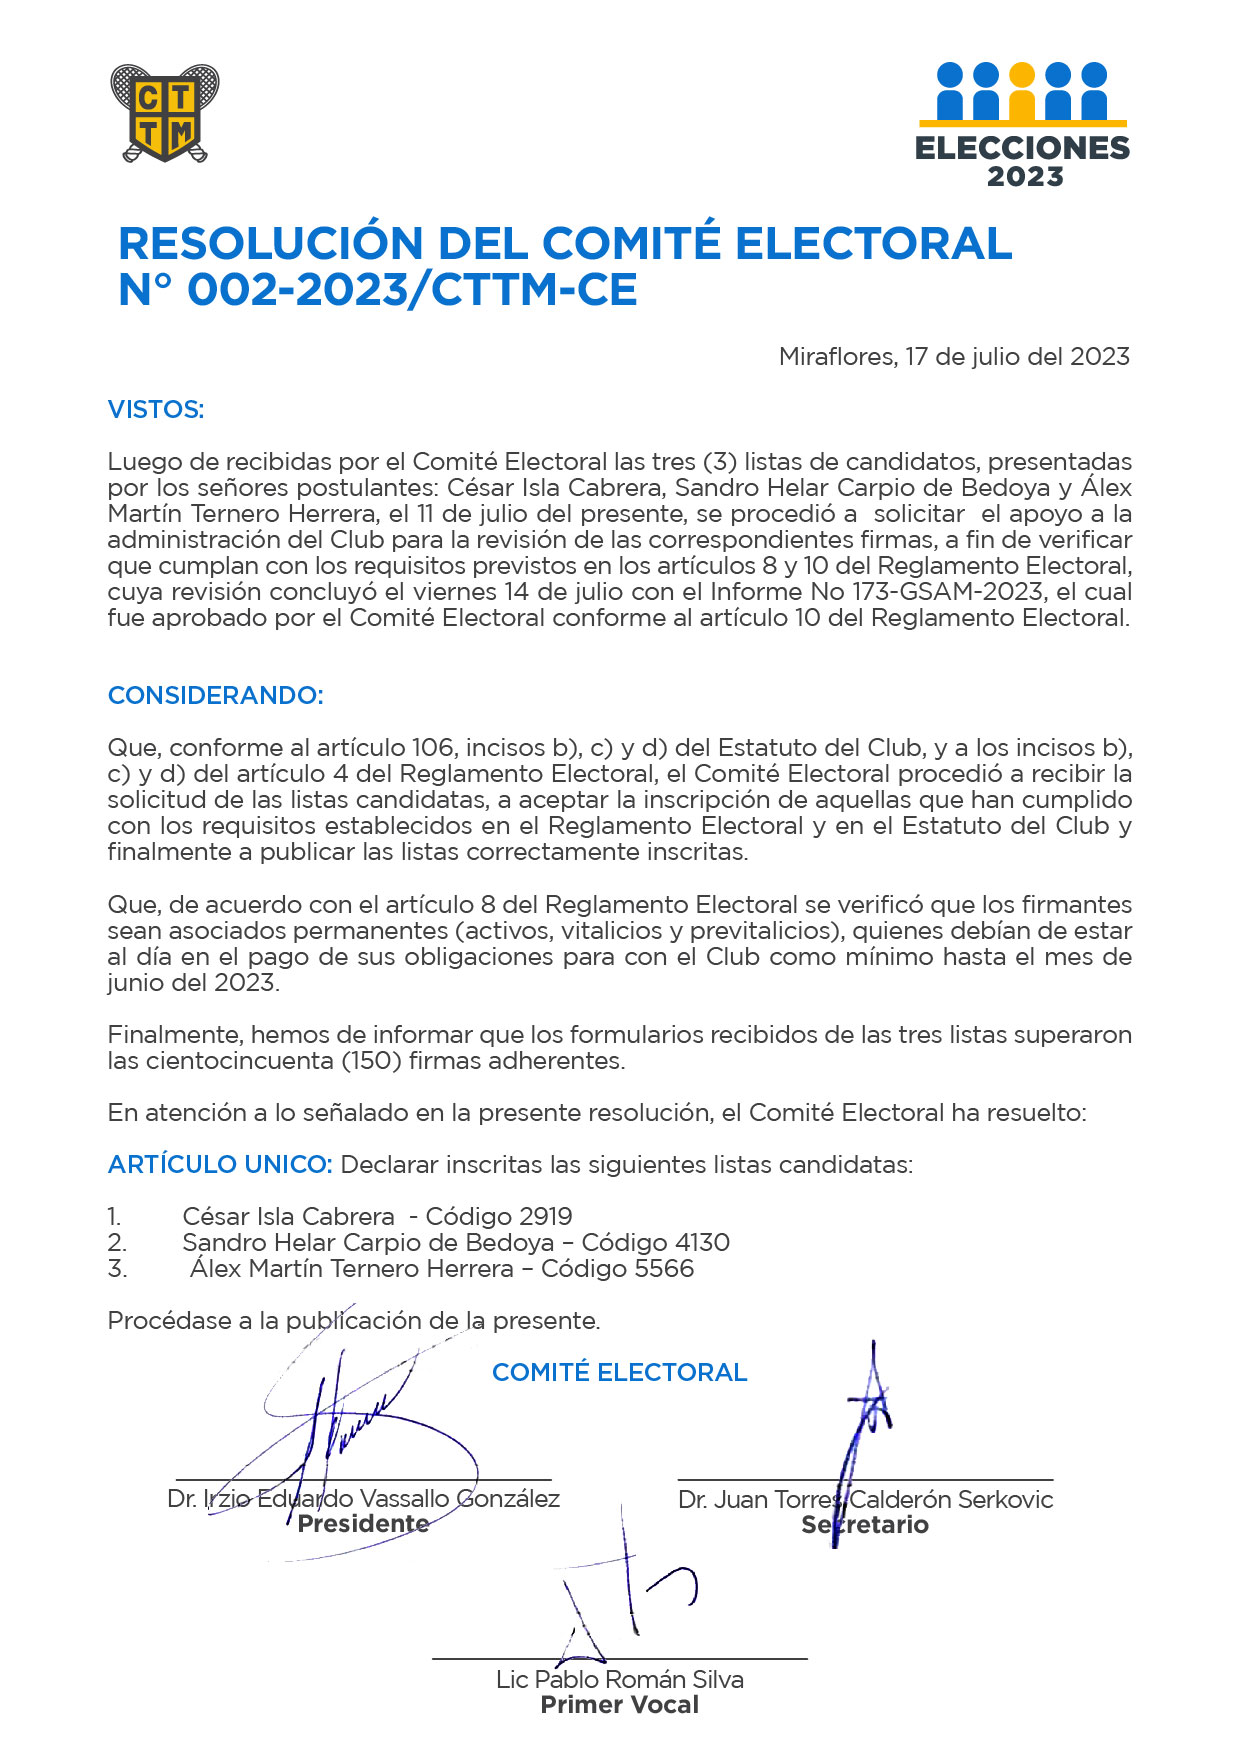 RESOLUCIÓN DEL COMITÉ ELECTORAL N° 002-2023/CTTM-CE